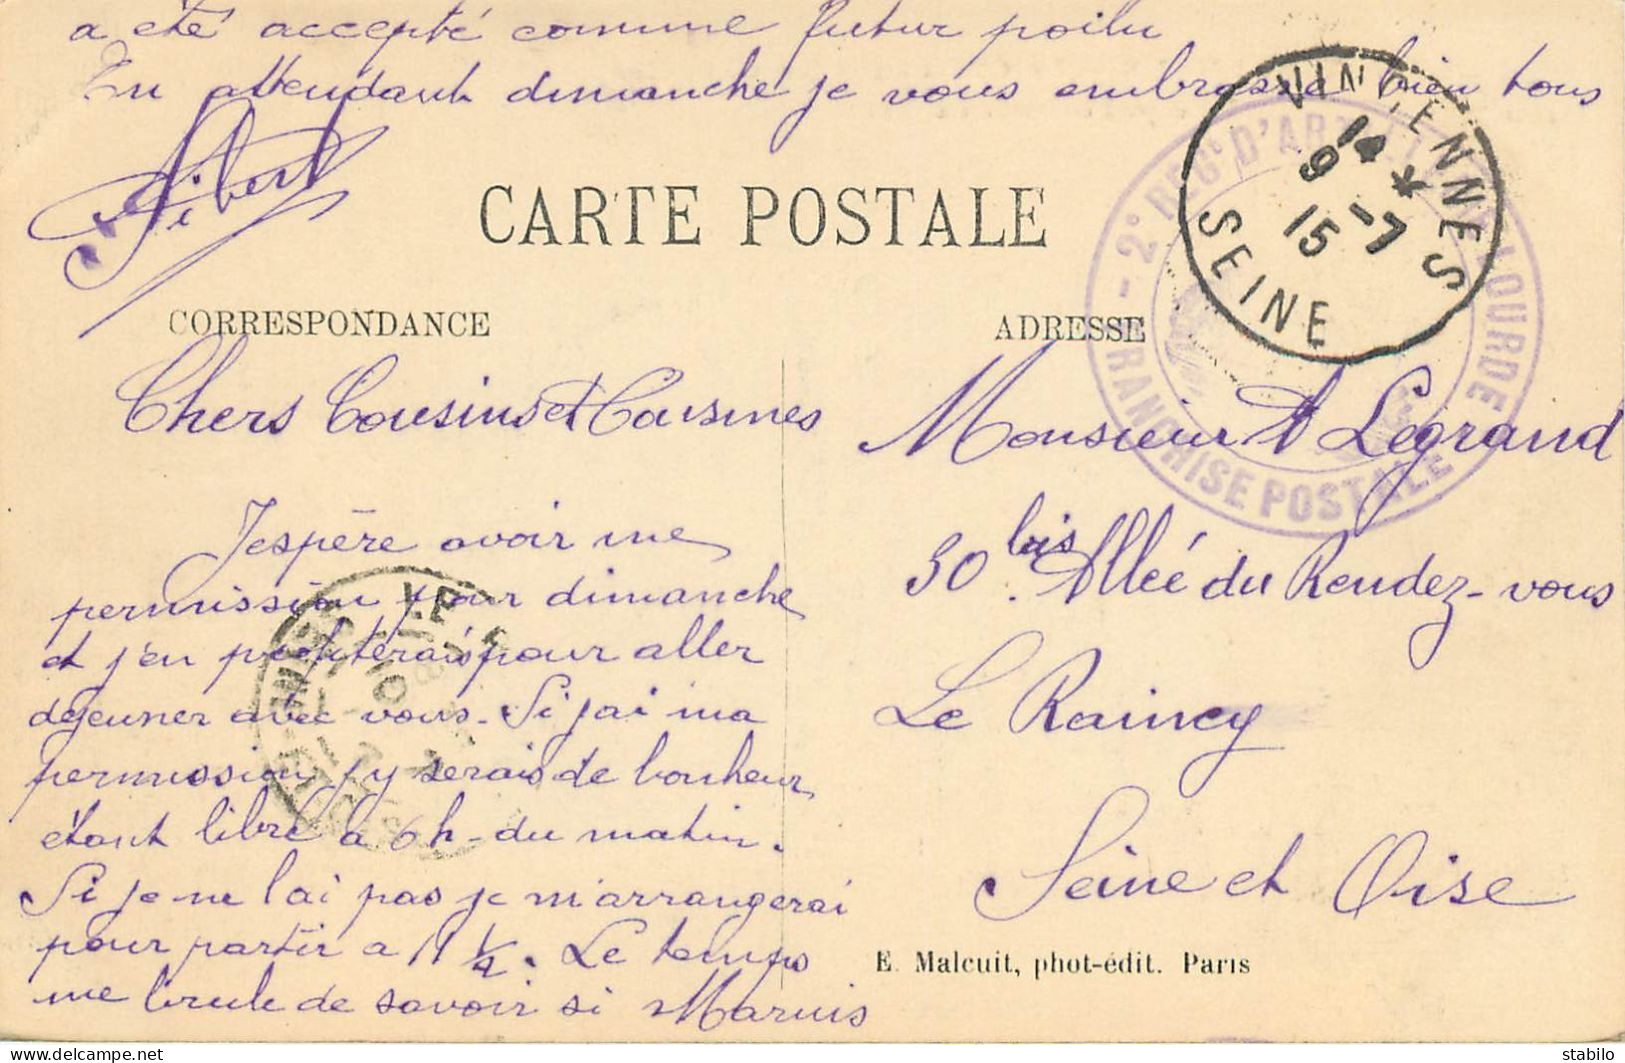 CACHET DU 2E REGIMENT D'ARTILLERIE LOURDE AVEC CACHET POSTAL DE VINCENNES DU 9.7.1915 - Guerra De 1914-18